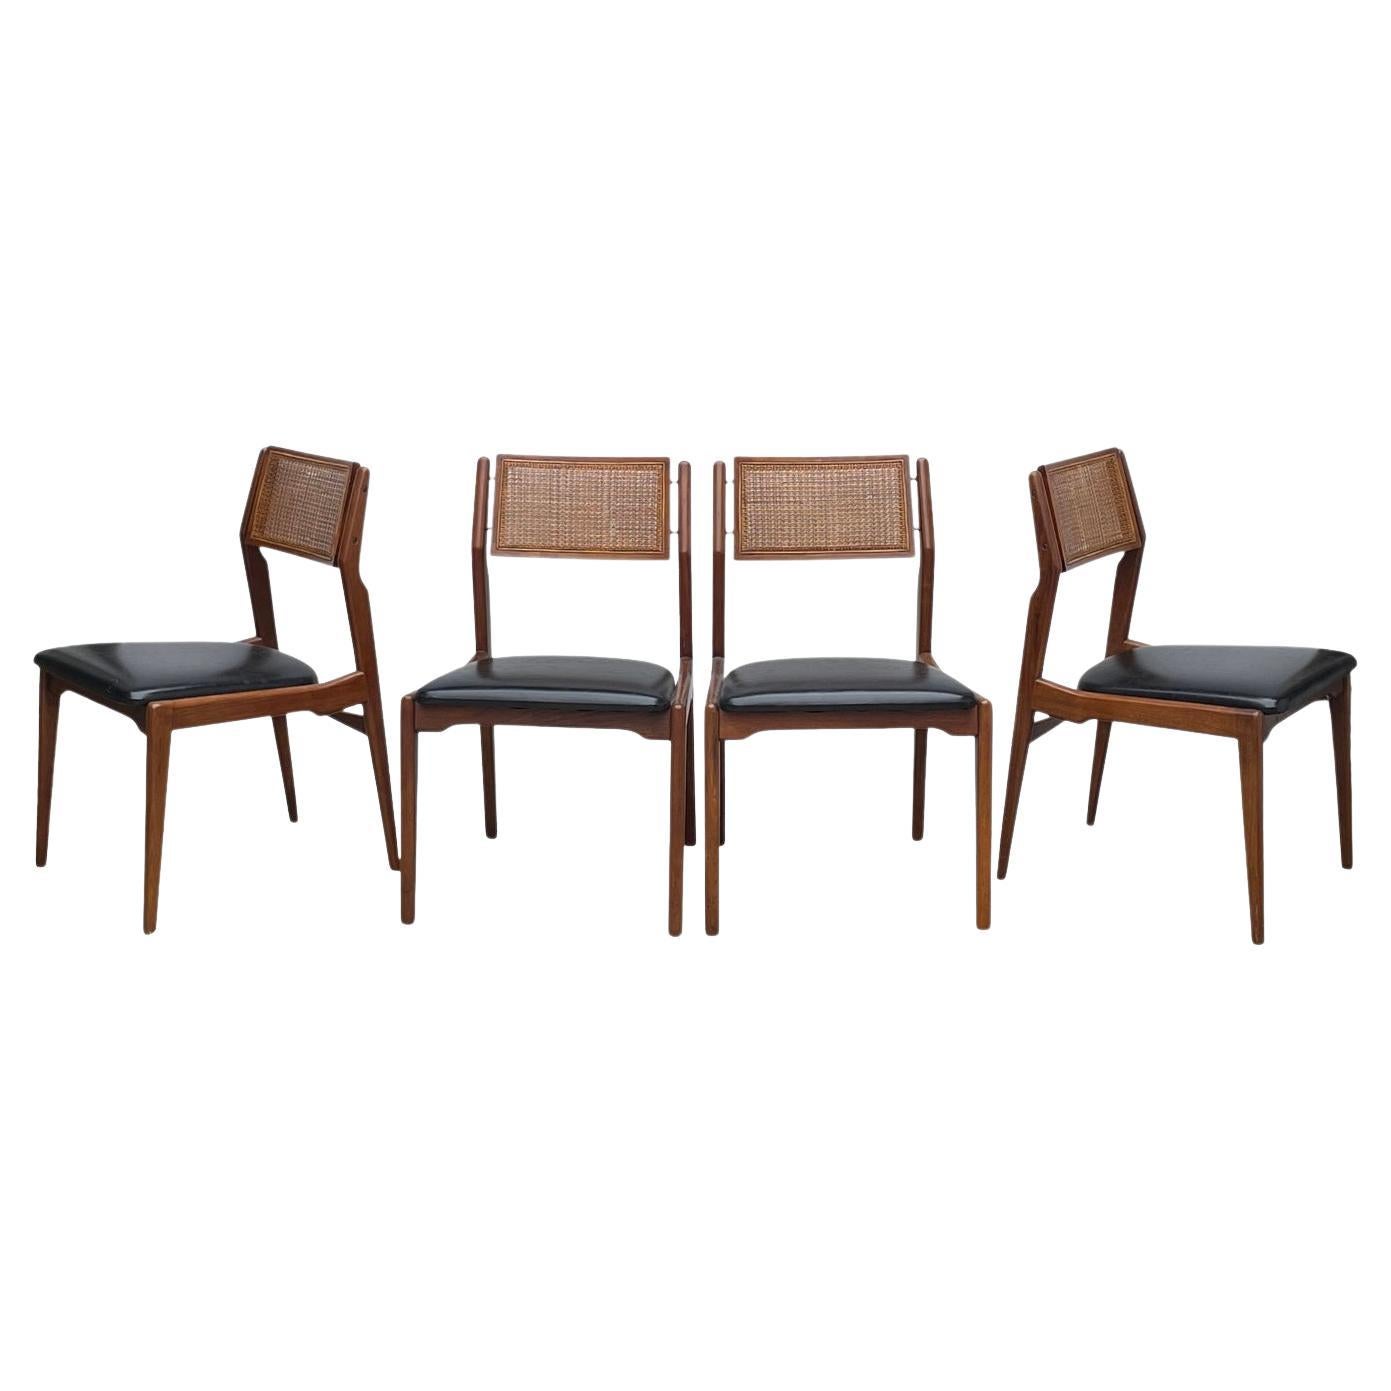 Ensemble classique de quatre chaises de salle à manger en noyer massif de style danois par specialty woodcraft en très bon état.